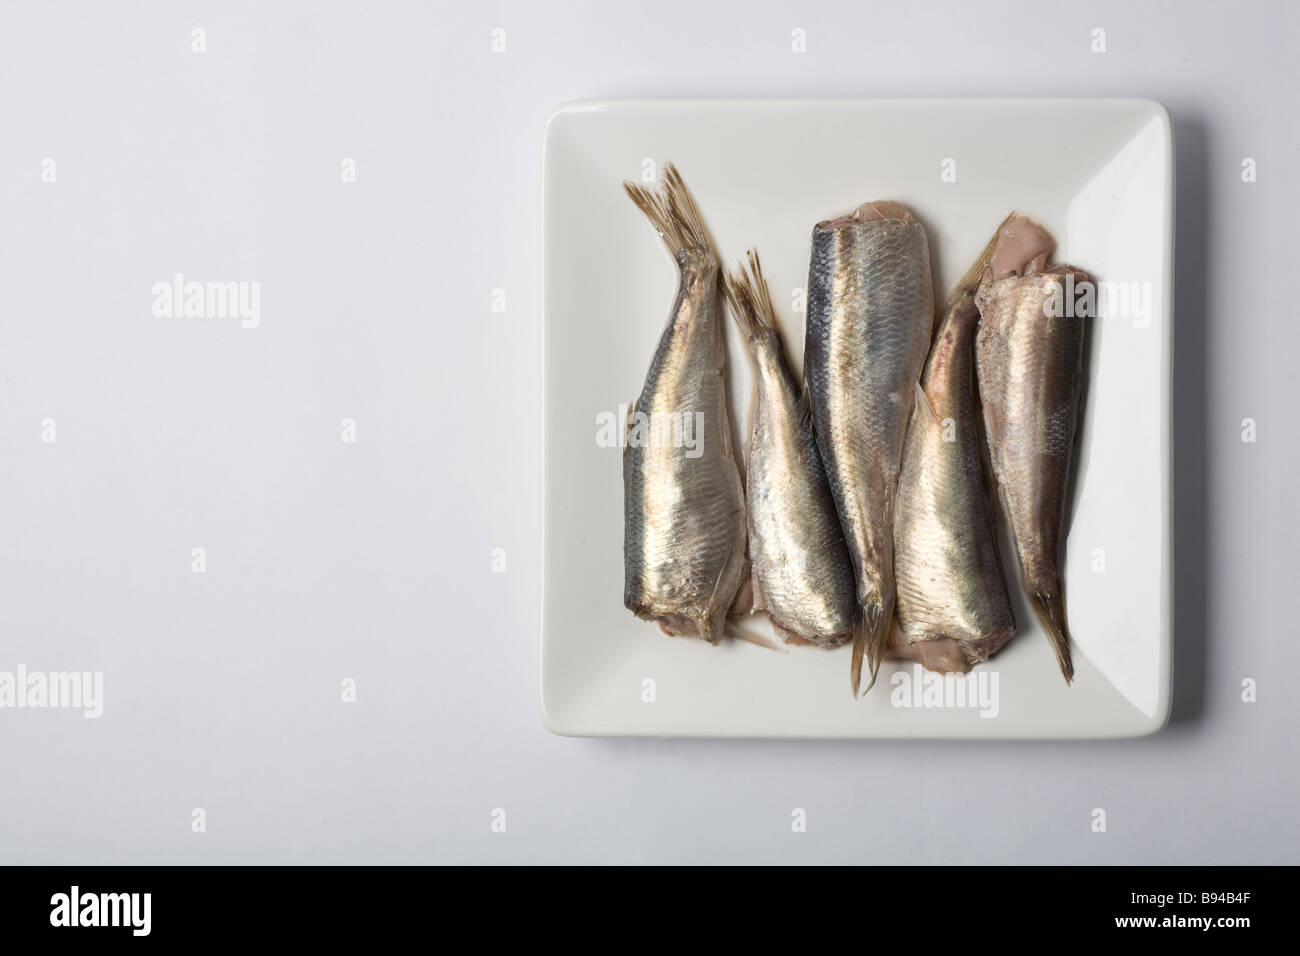 Surströmming, el pescado fermentado sueco